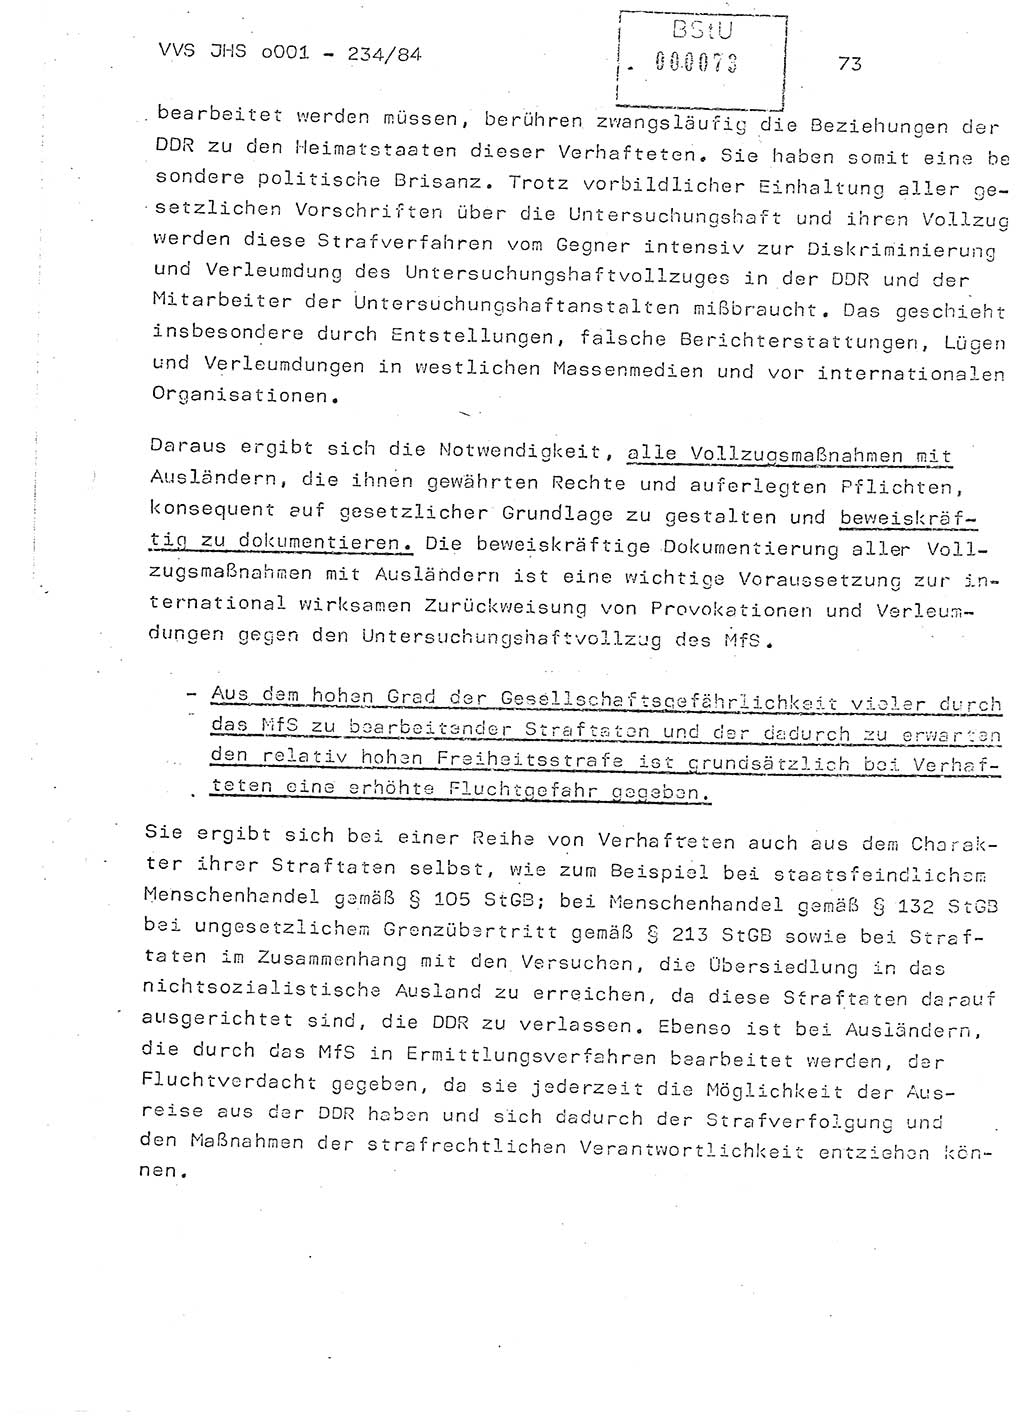 Dissertation Oberst Siegfried Rataizick (Abt. ⅩⅣ), Oberstleutnant Volkmar Heinz (Abt. ⅩⅣ), Oberstleutnant Werner Stein (HA Ⅸ), Hauptmann Heinz Conrad (JHS), Ministerium für Staatssicherheit (MfS) [Deutsche Demokratische Republik (DDR)], Juristische Hochschule (JHS), Vertrauliche Verschlußsache (VVS) o001-234/84, Potsdam 1984, Seite 73 (Diss. MfS DDR JHS VVS o001-234/84 1984, S. 73)